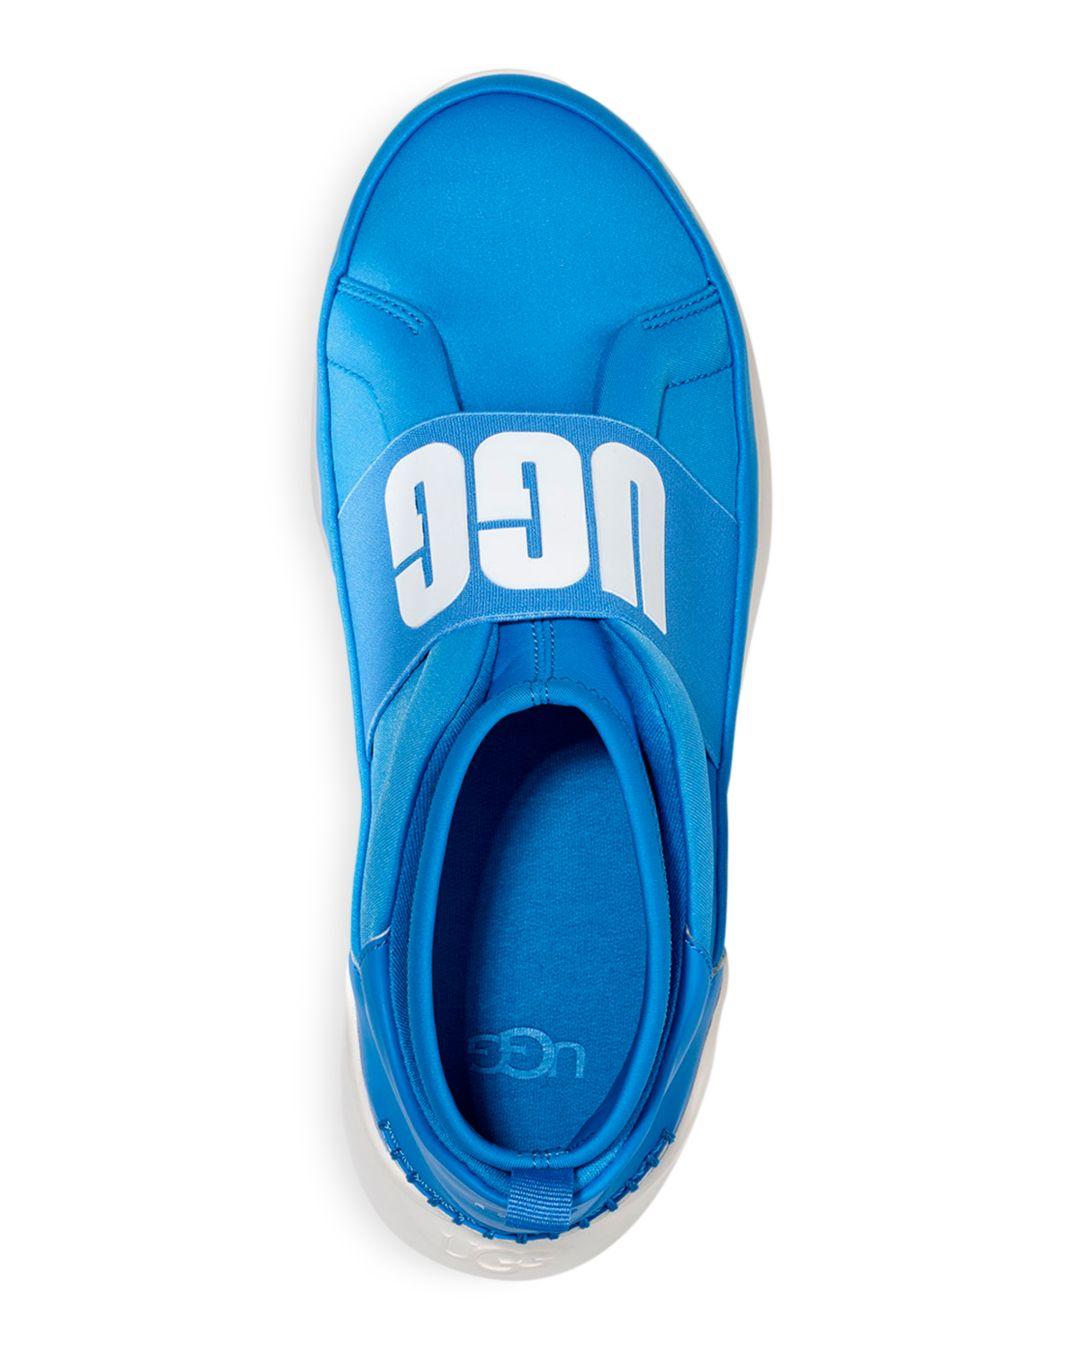 UGG Suede Women's Neutra Neon Sneakers in Neon Blue (Blue) - Lyst